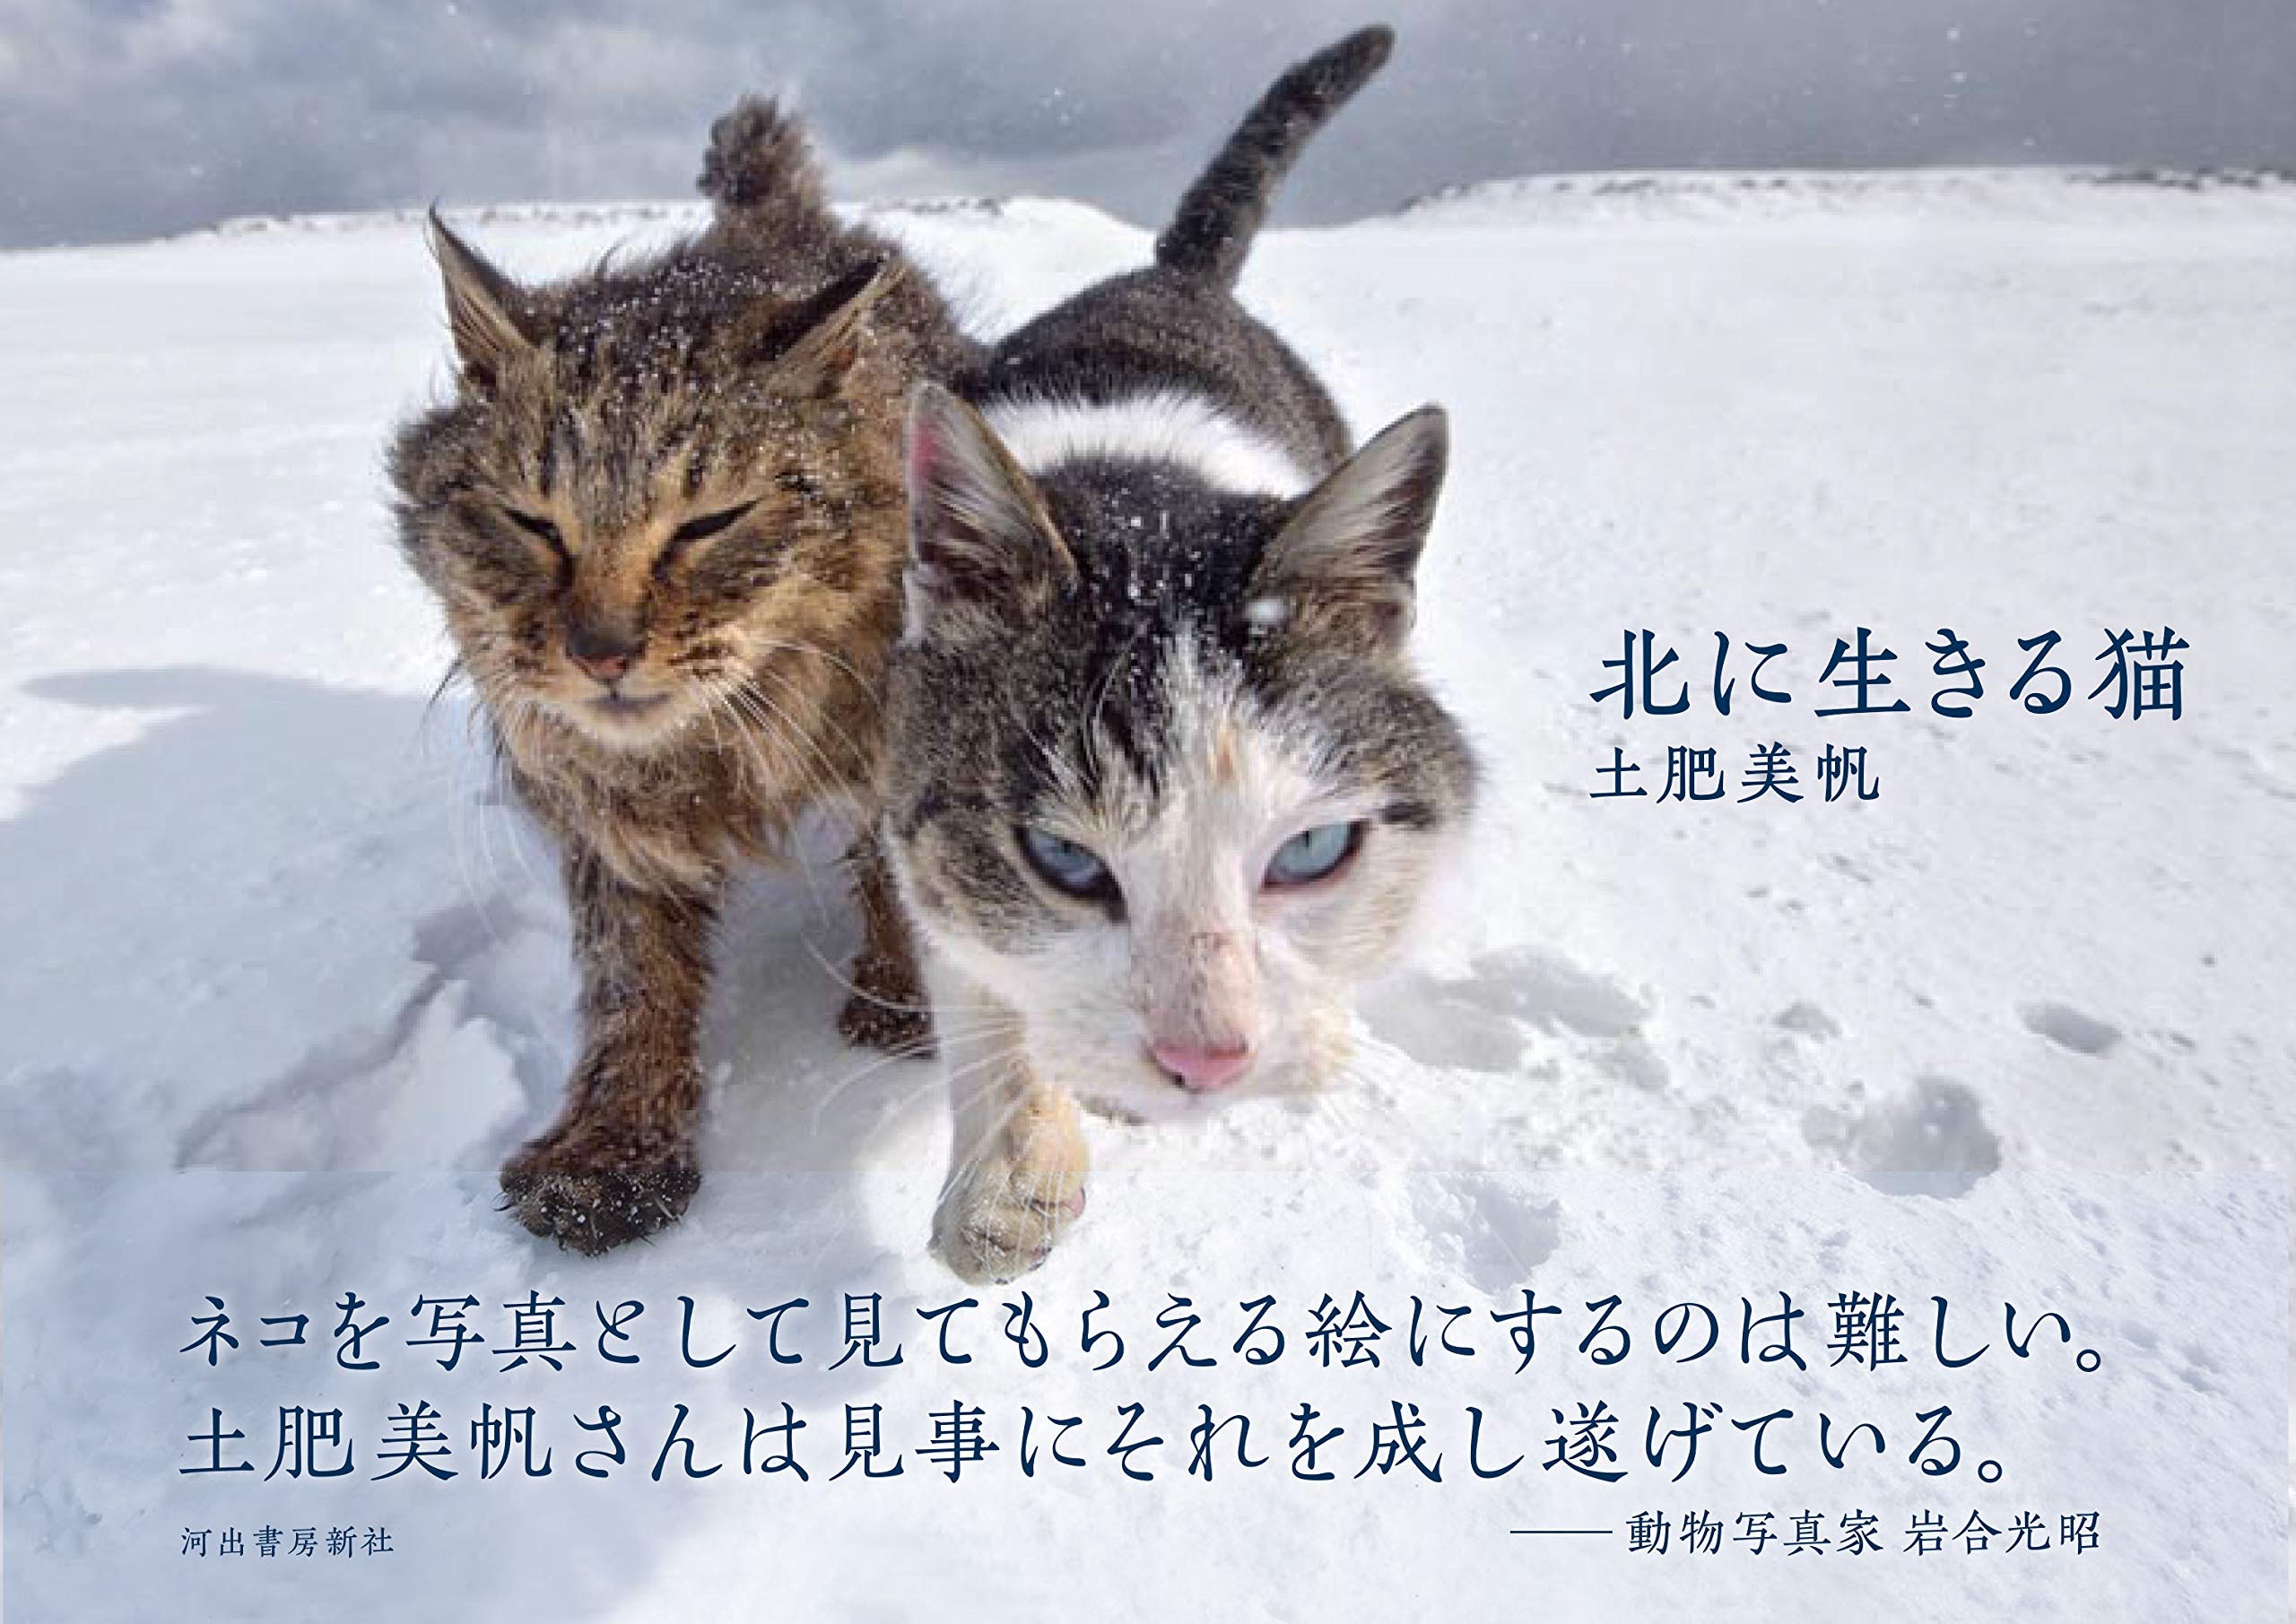 萌寵充電站 北海道流浪貓毋懼零下寒冬23張相展現頑強生命力